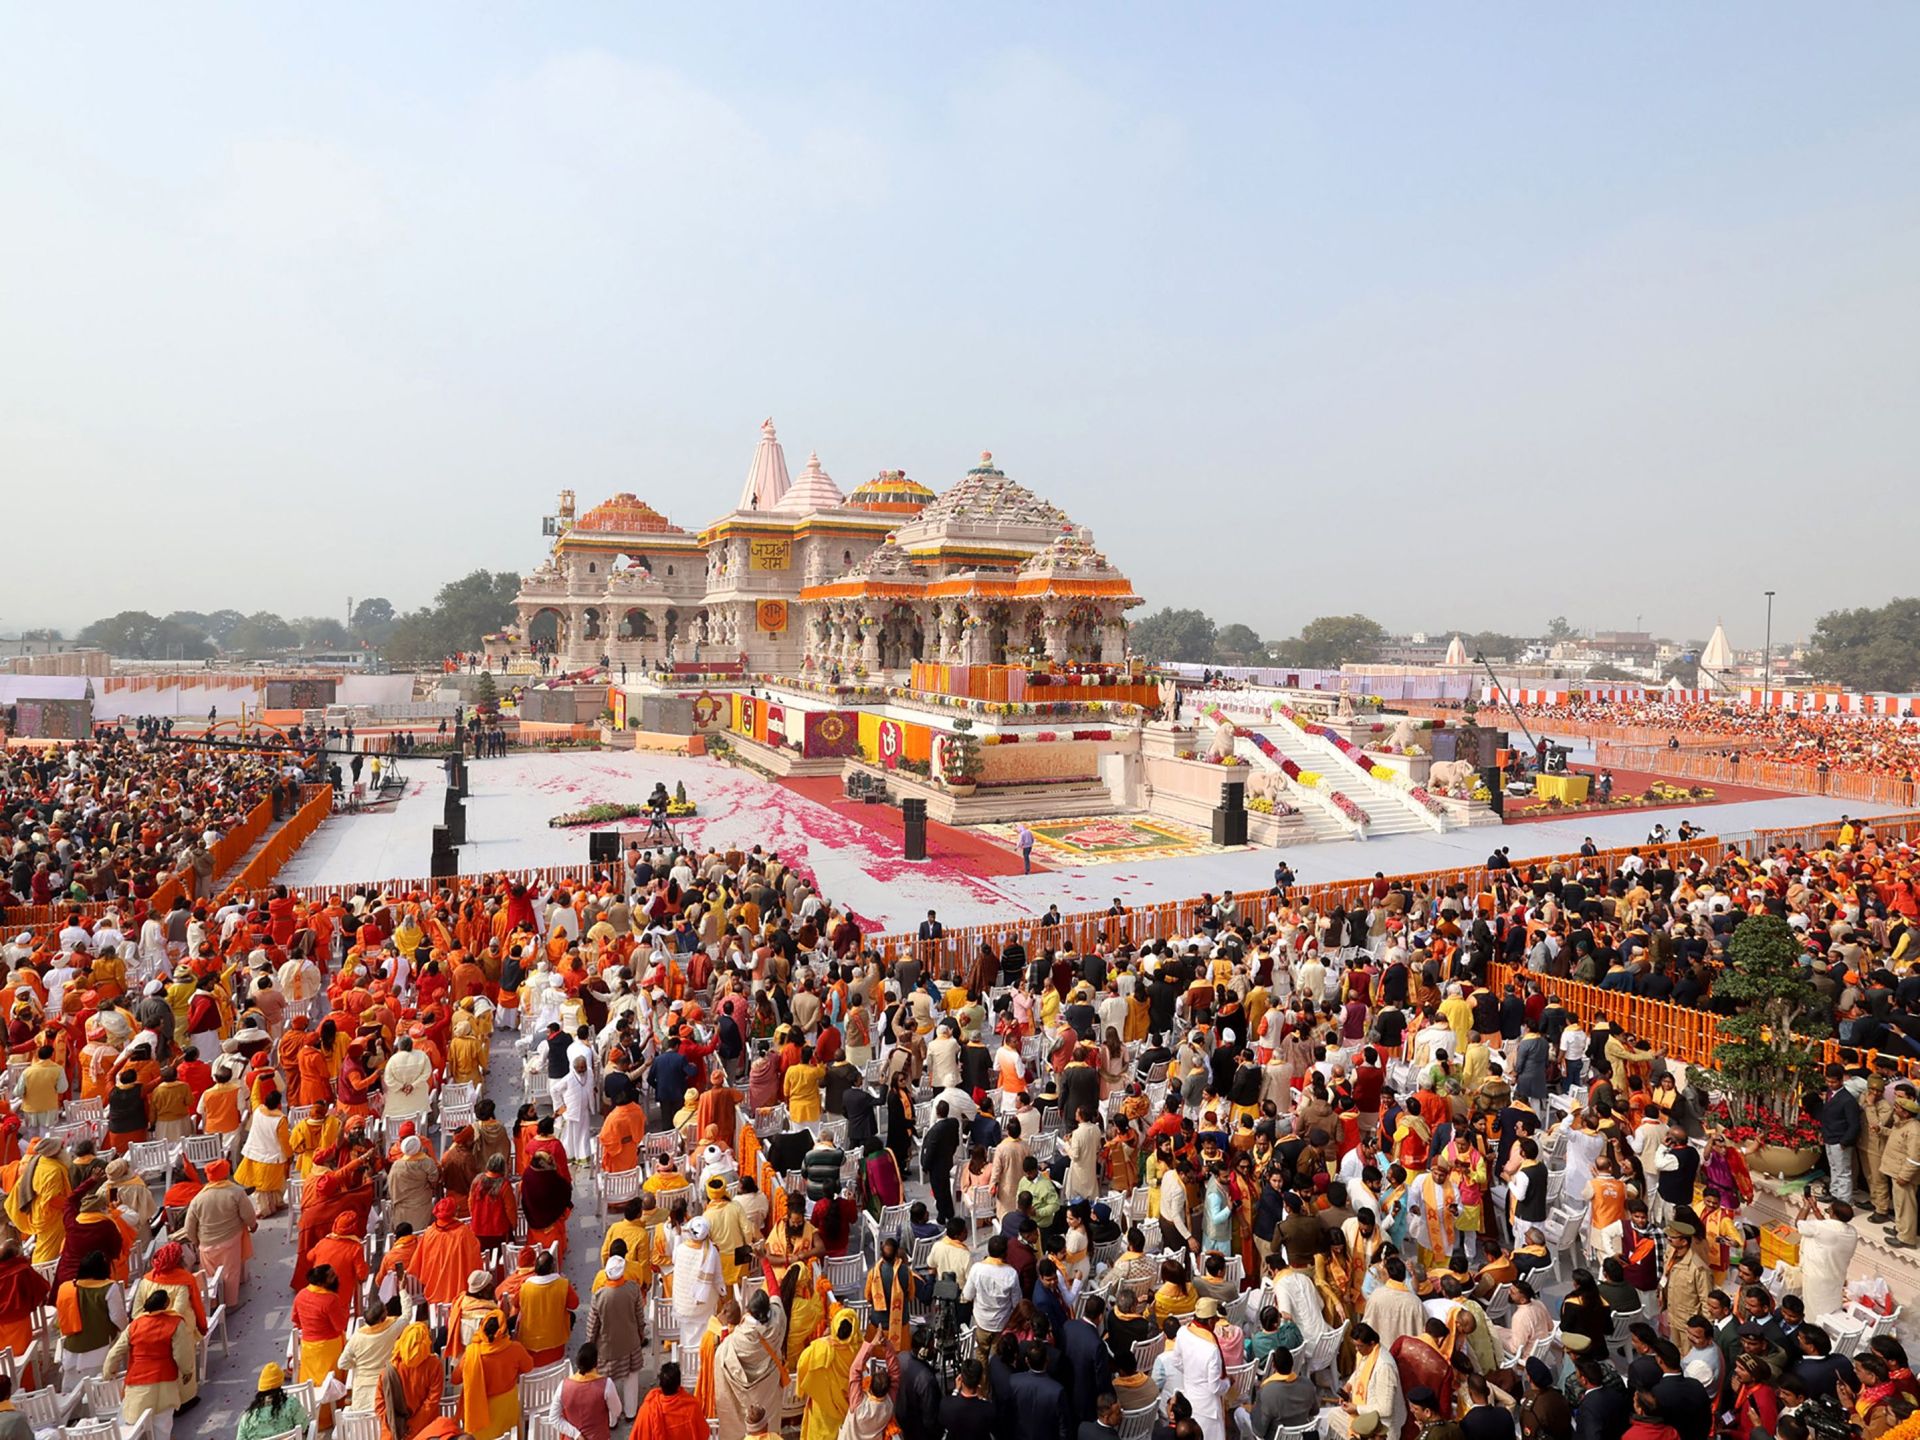 مودي يستعين بـ”الإله رام” لاقتلاع علمانية الهند | سياسة – البوكس نيوز